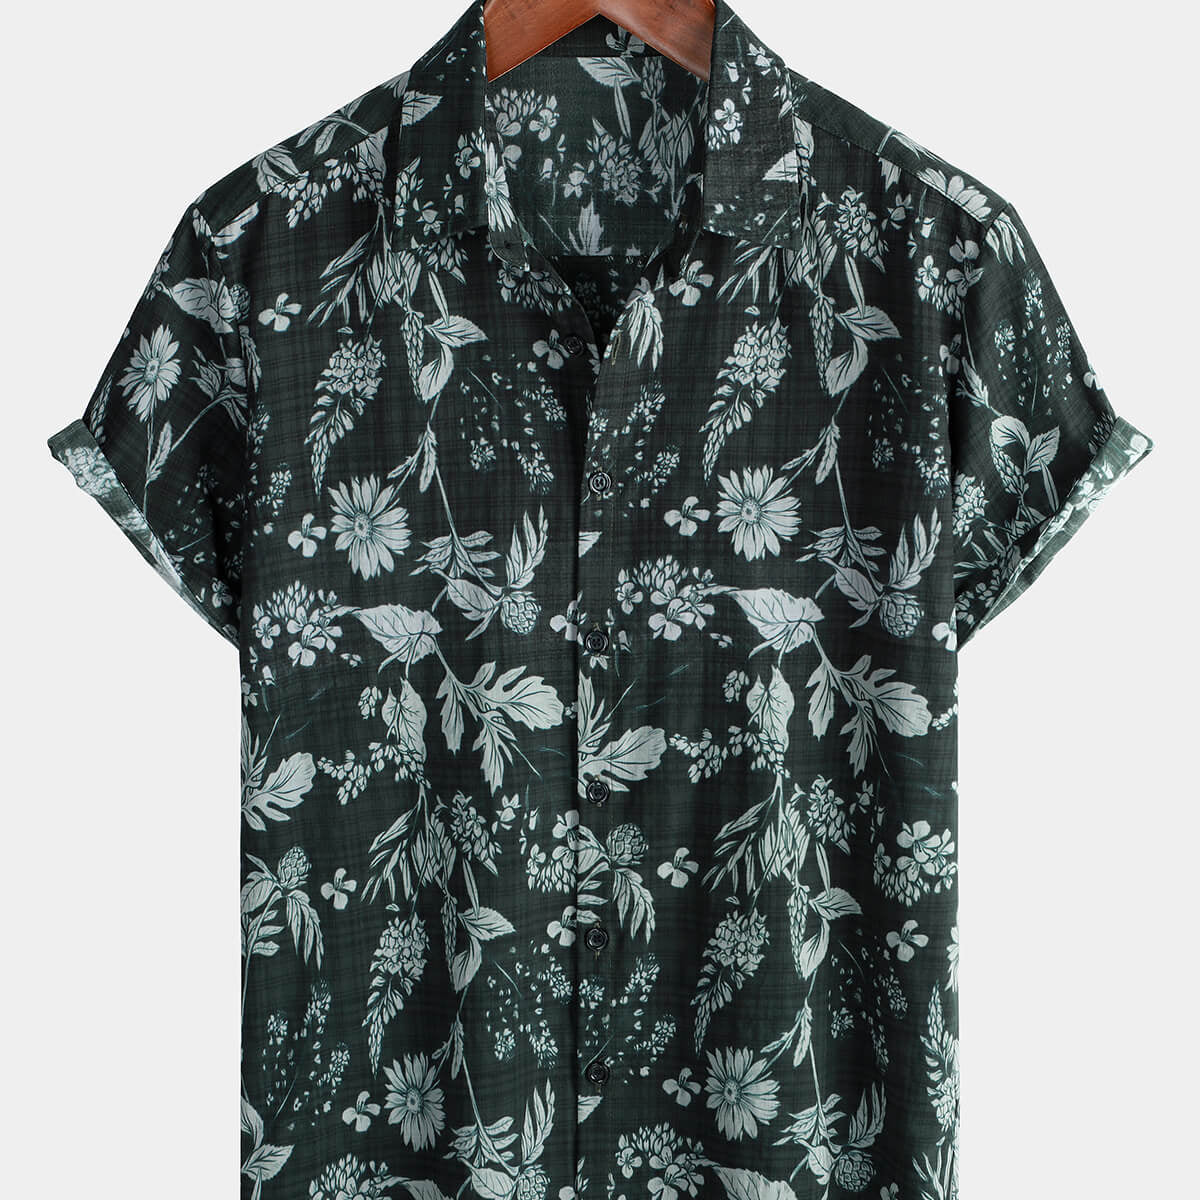 Men's Tropical Floral Summer Beach Button Up Short Sleeve Shirt